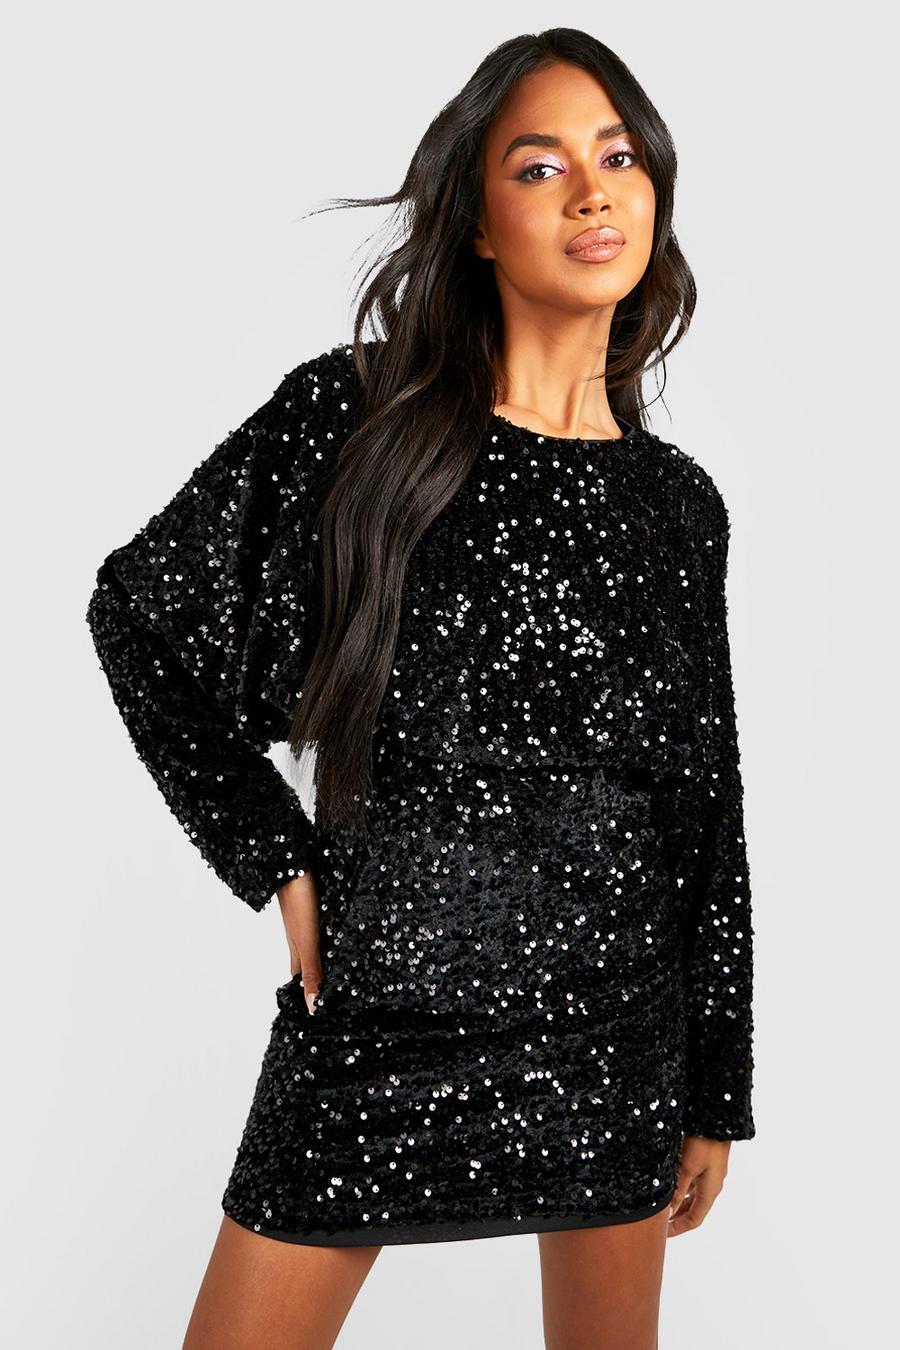 Black Velvet Sequin Blouson Mini Party Dress